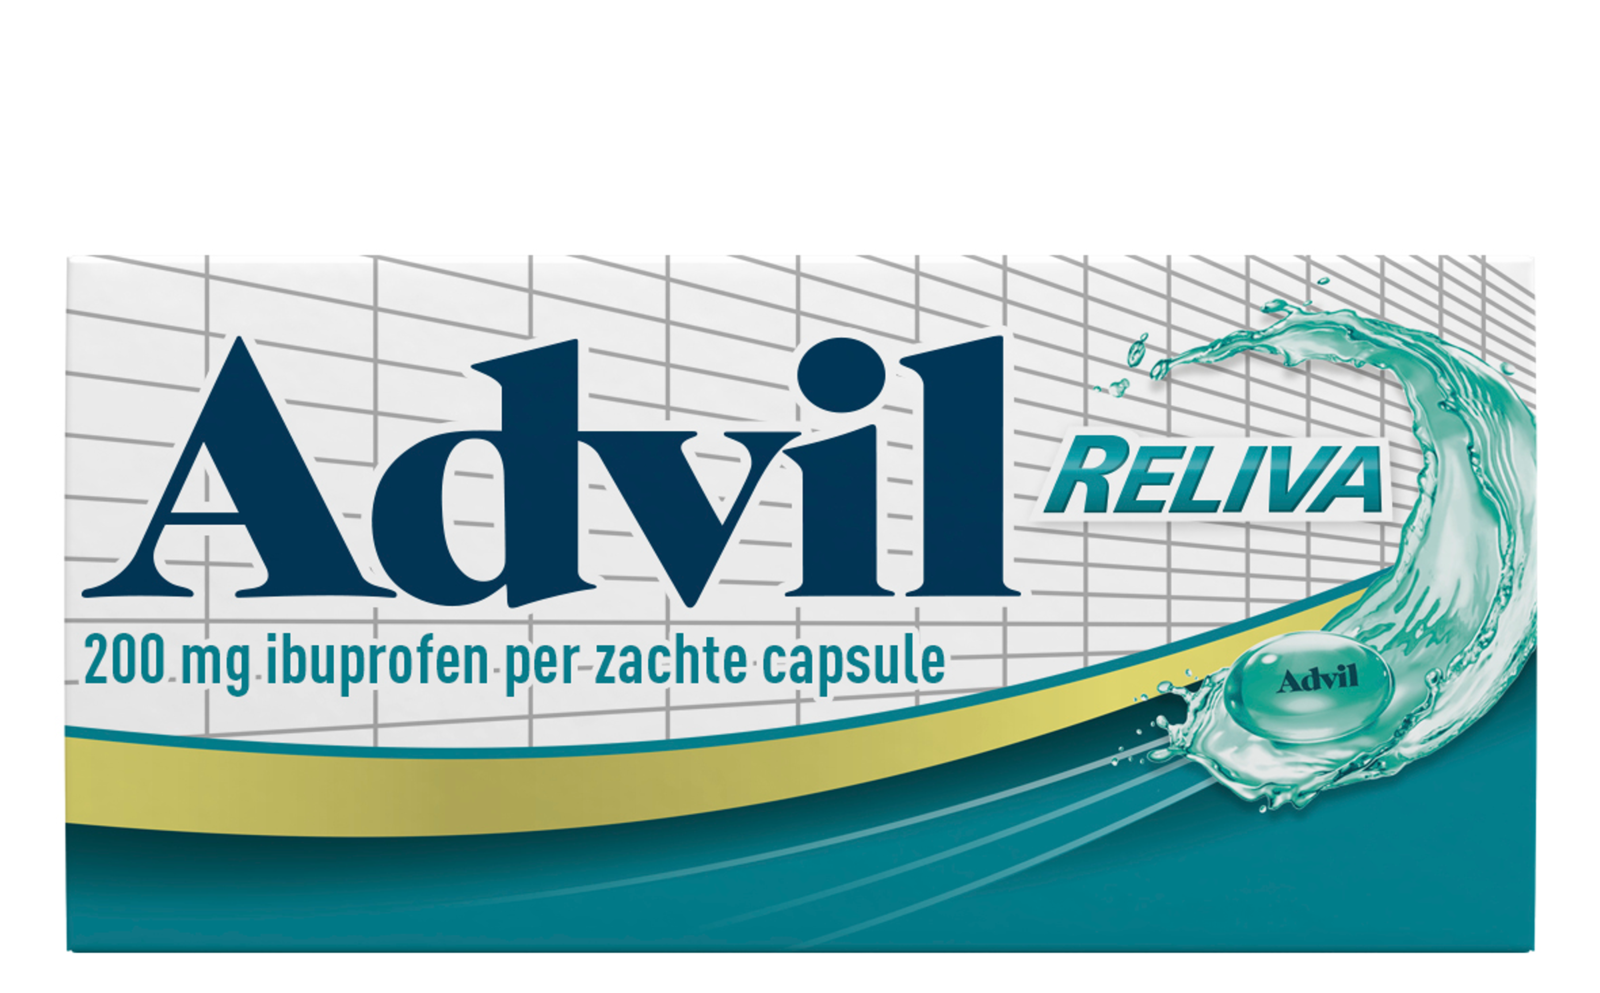 Advil Reliva Liquid-Caps 200 mg voor pijn en koorts kopen